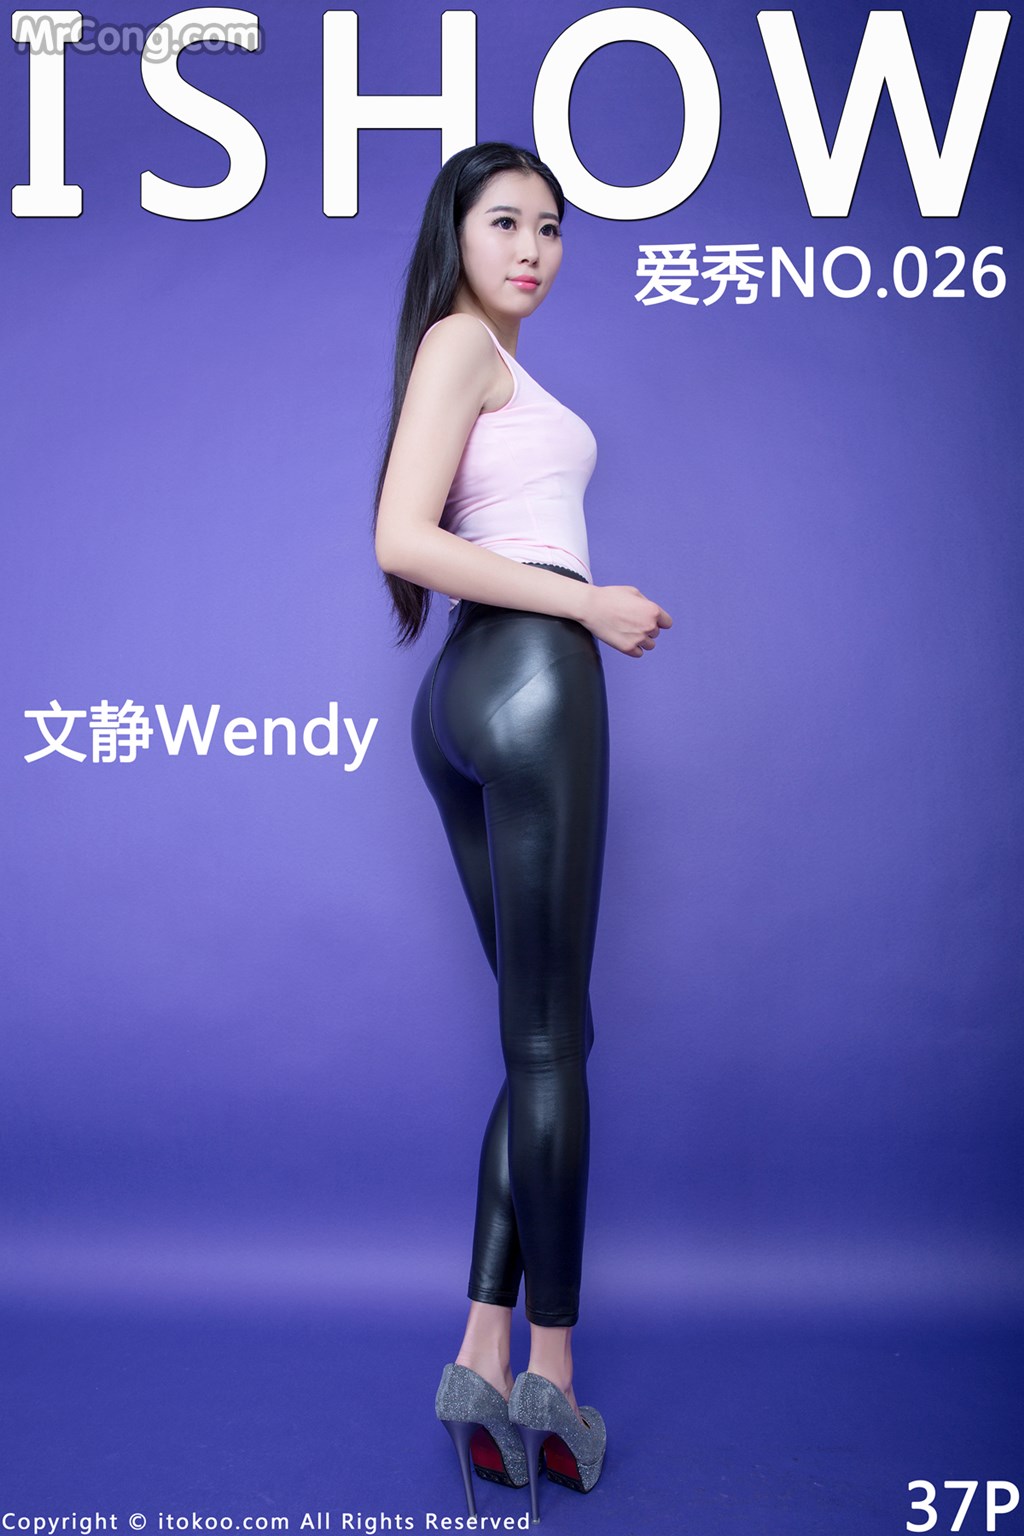 ISHOW No.026: Model Wendy (文静) (38 photos) photo 1-0